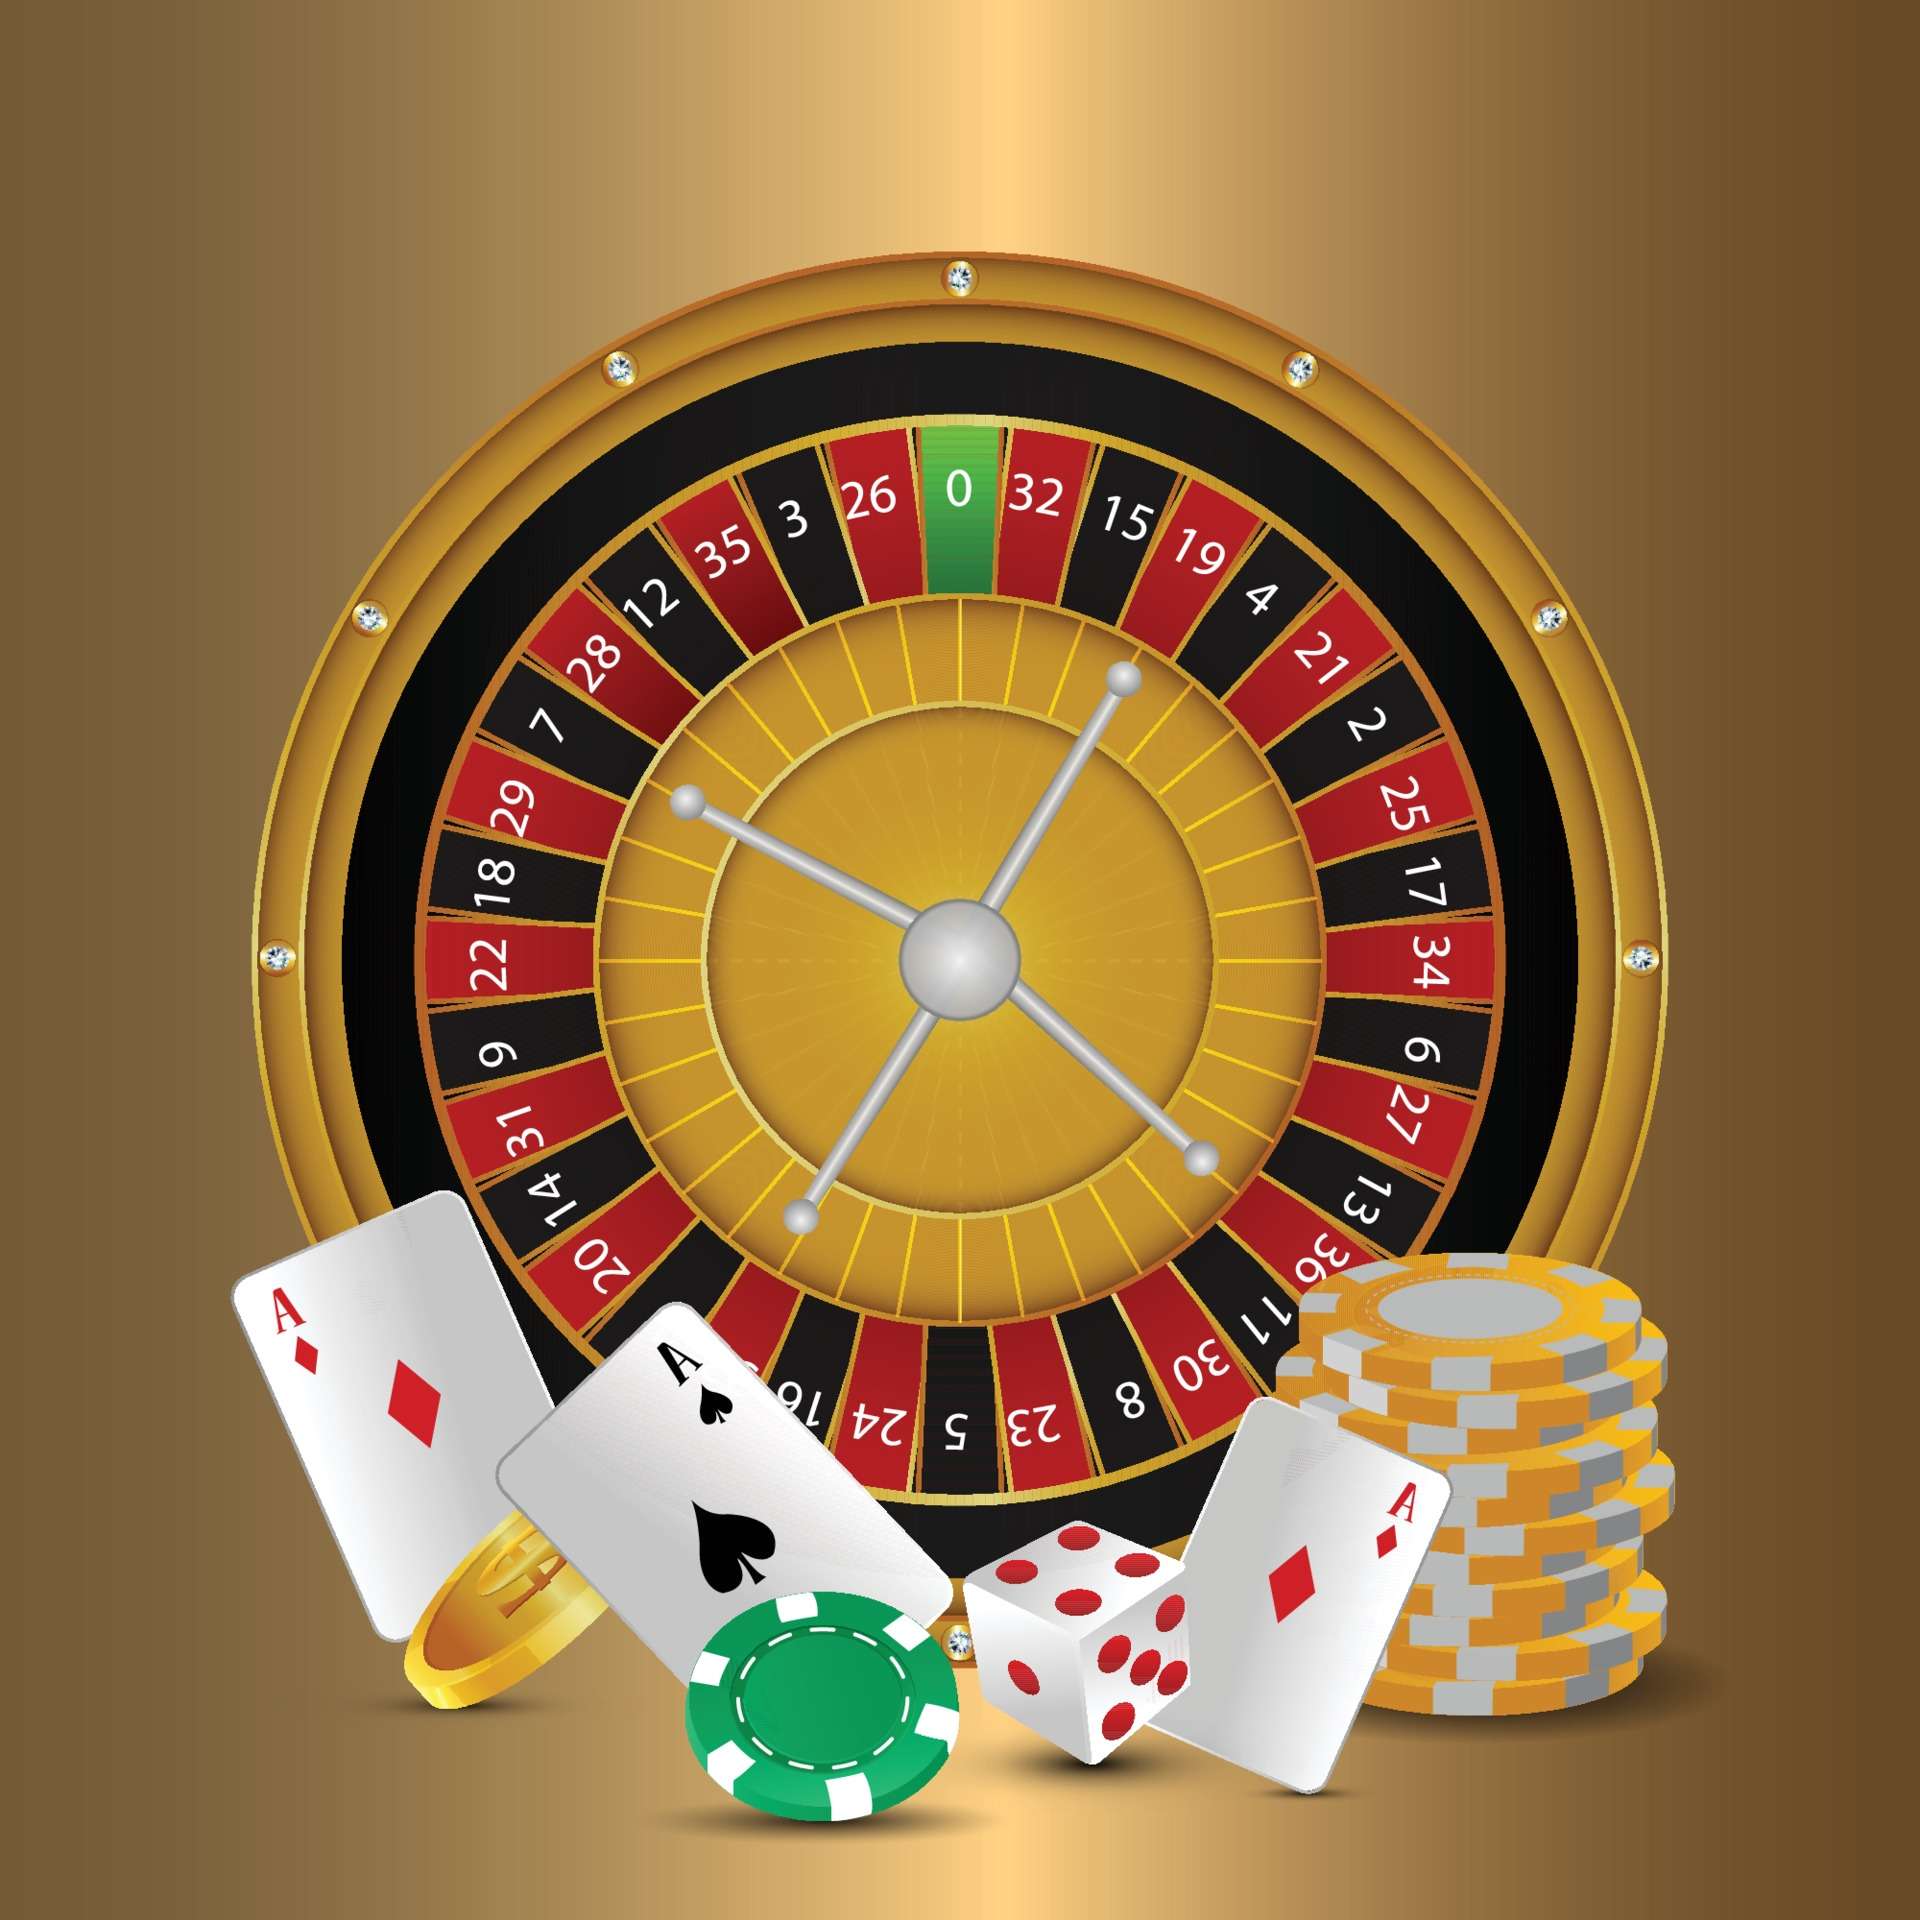 10-dollar-deposit-casinos-logo